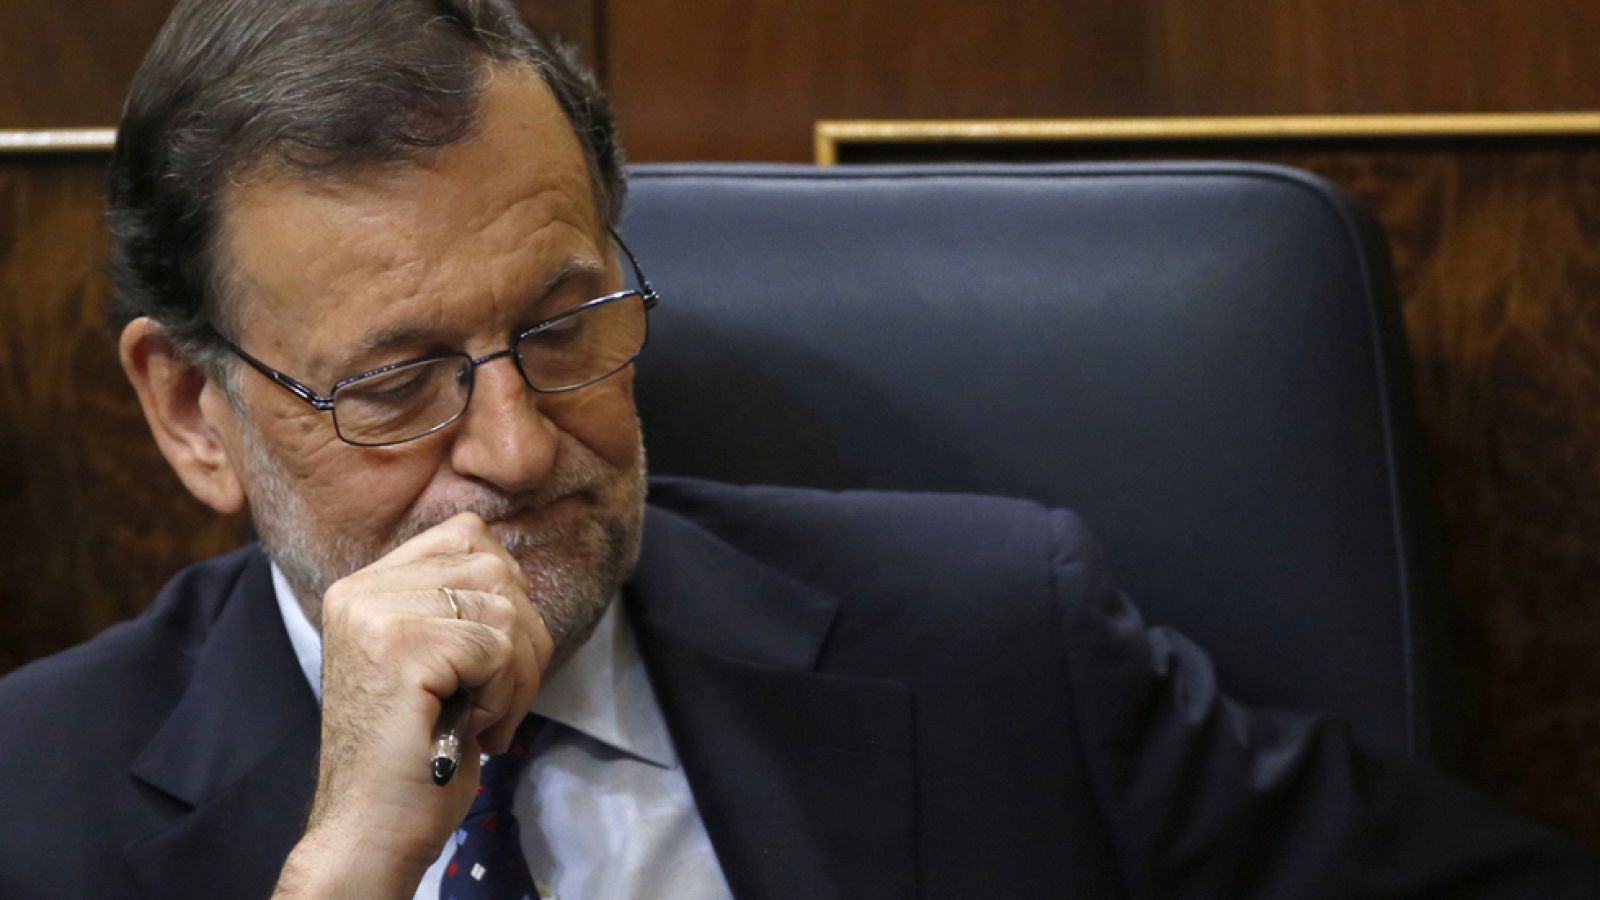 El Parlamento vuelve a votar 'no' a la investidura de Rajoy